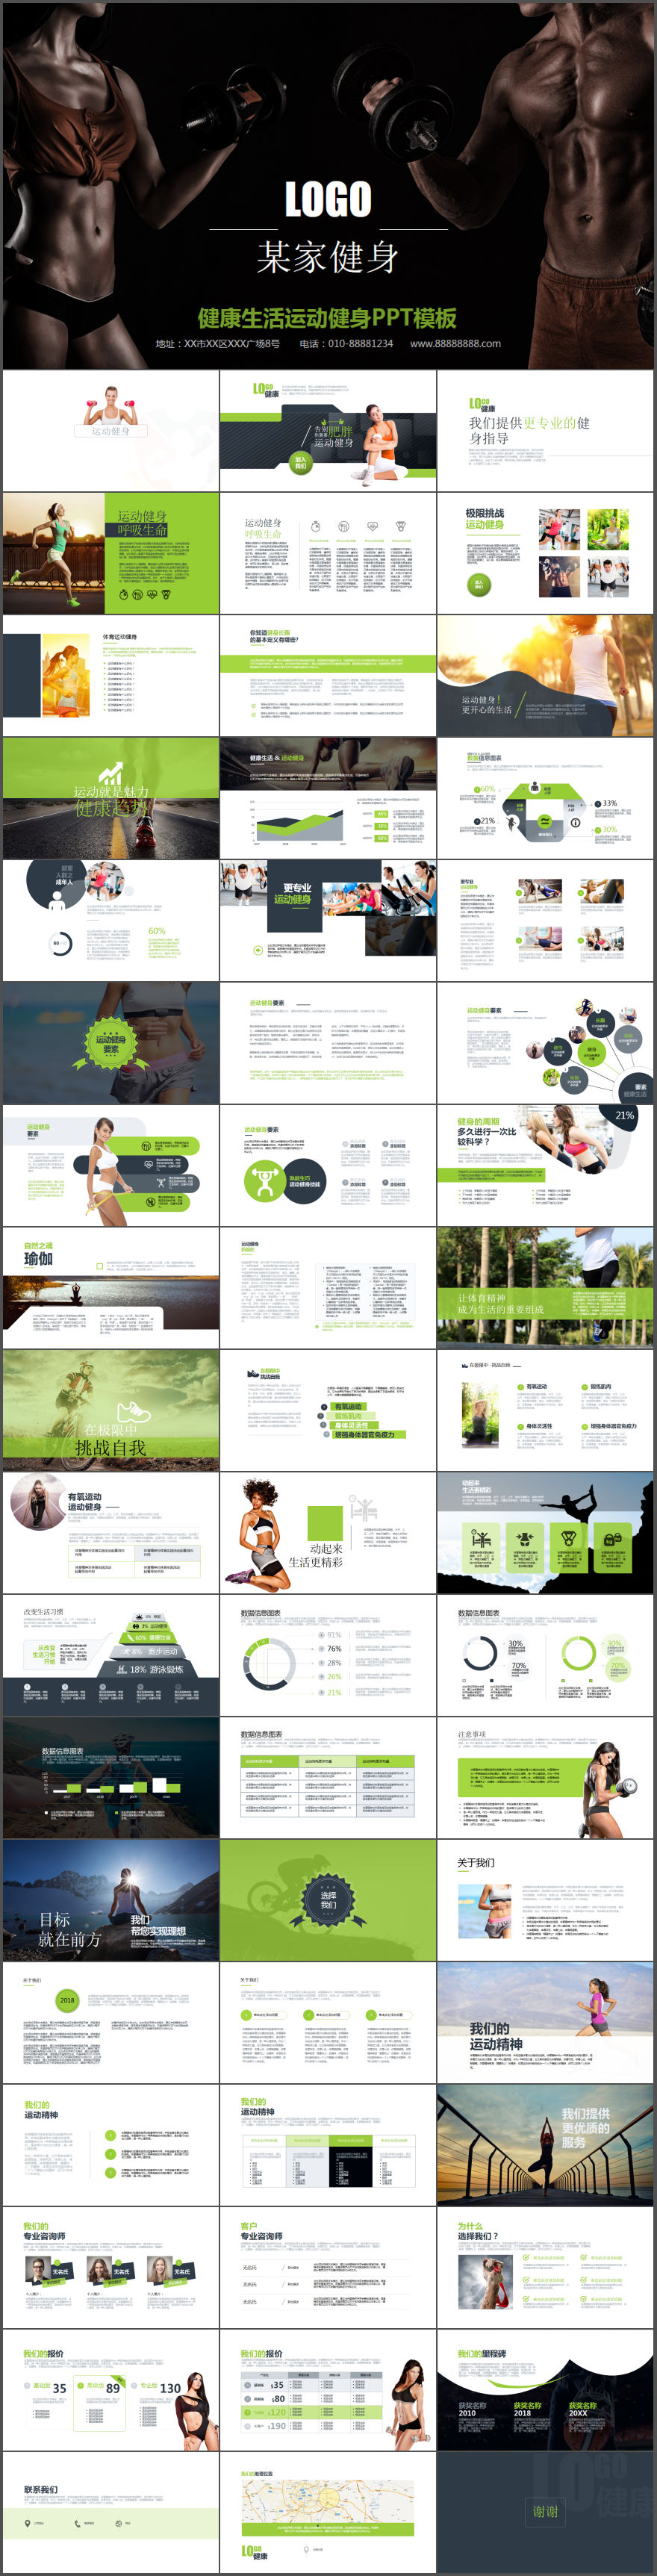 健身房项目介绍宣传健身数据分析动态PPT模板